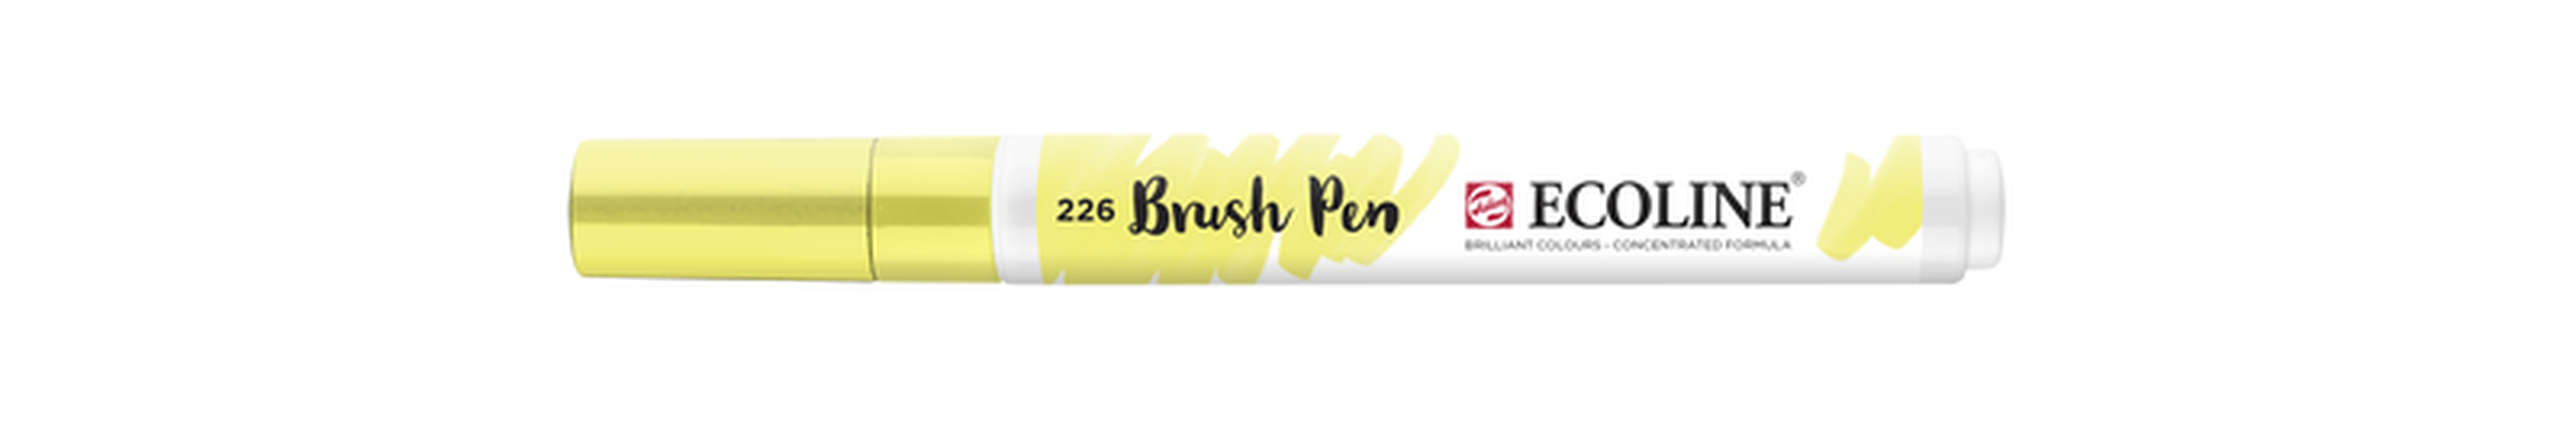 Talens Brush Pen Ecoline Nummer 226 Farbe Gelb Pastell